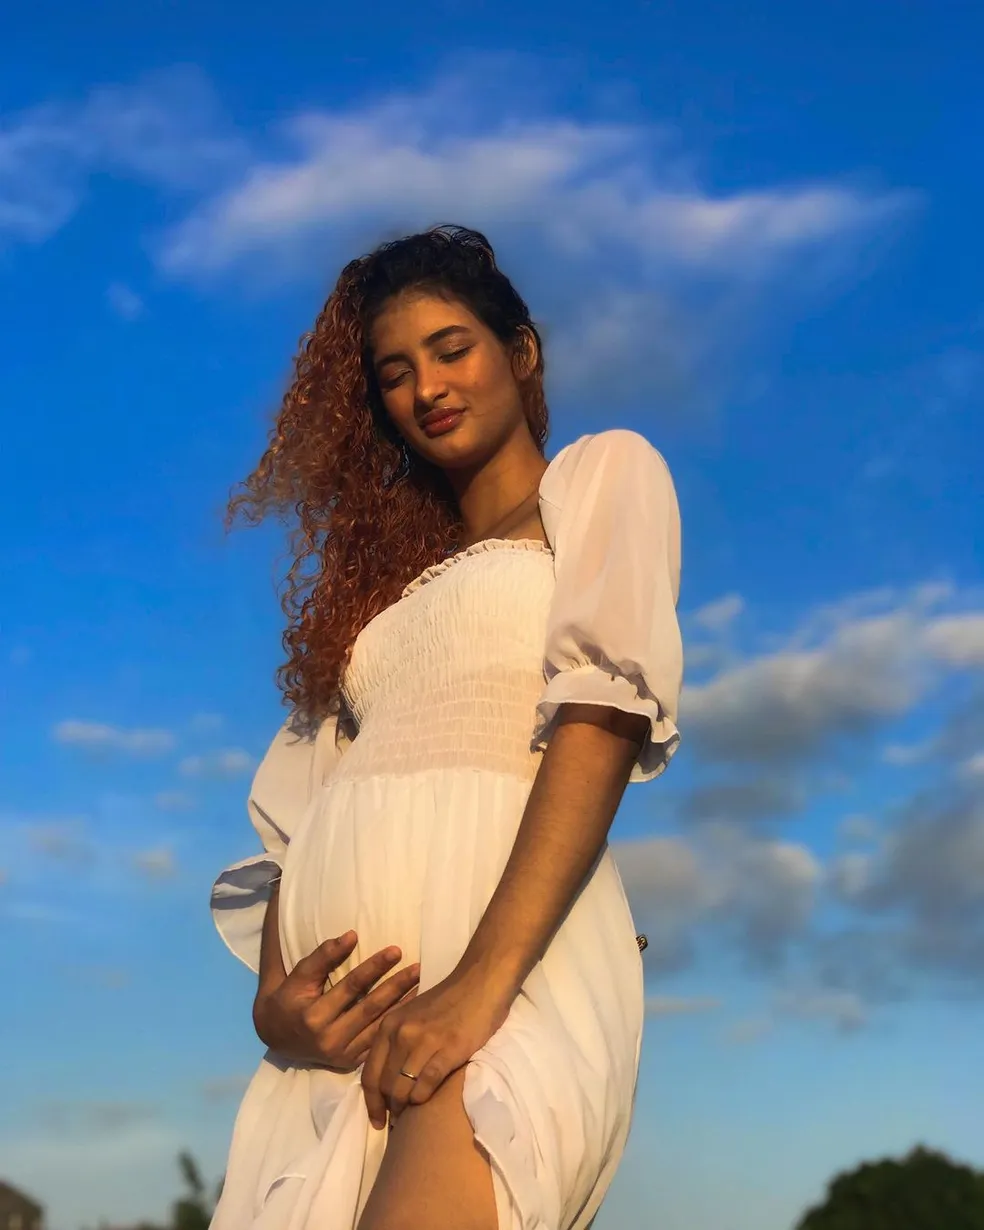 asomadetodosafetos.com - No sétimo mês de gravidez, mãe descobre que dará luz a gêmeos: "Achei que era um só"